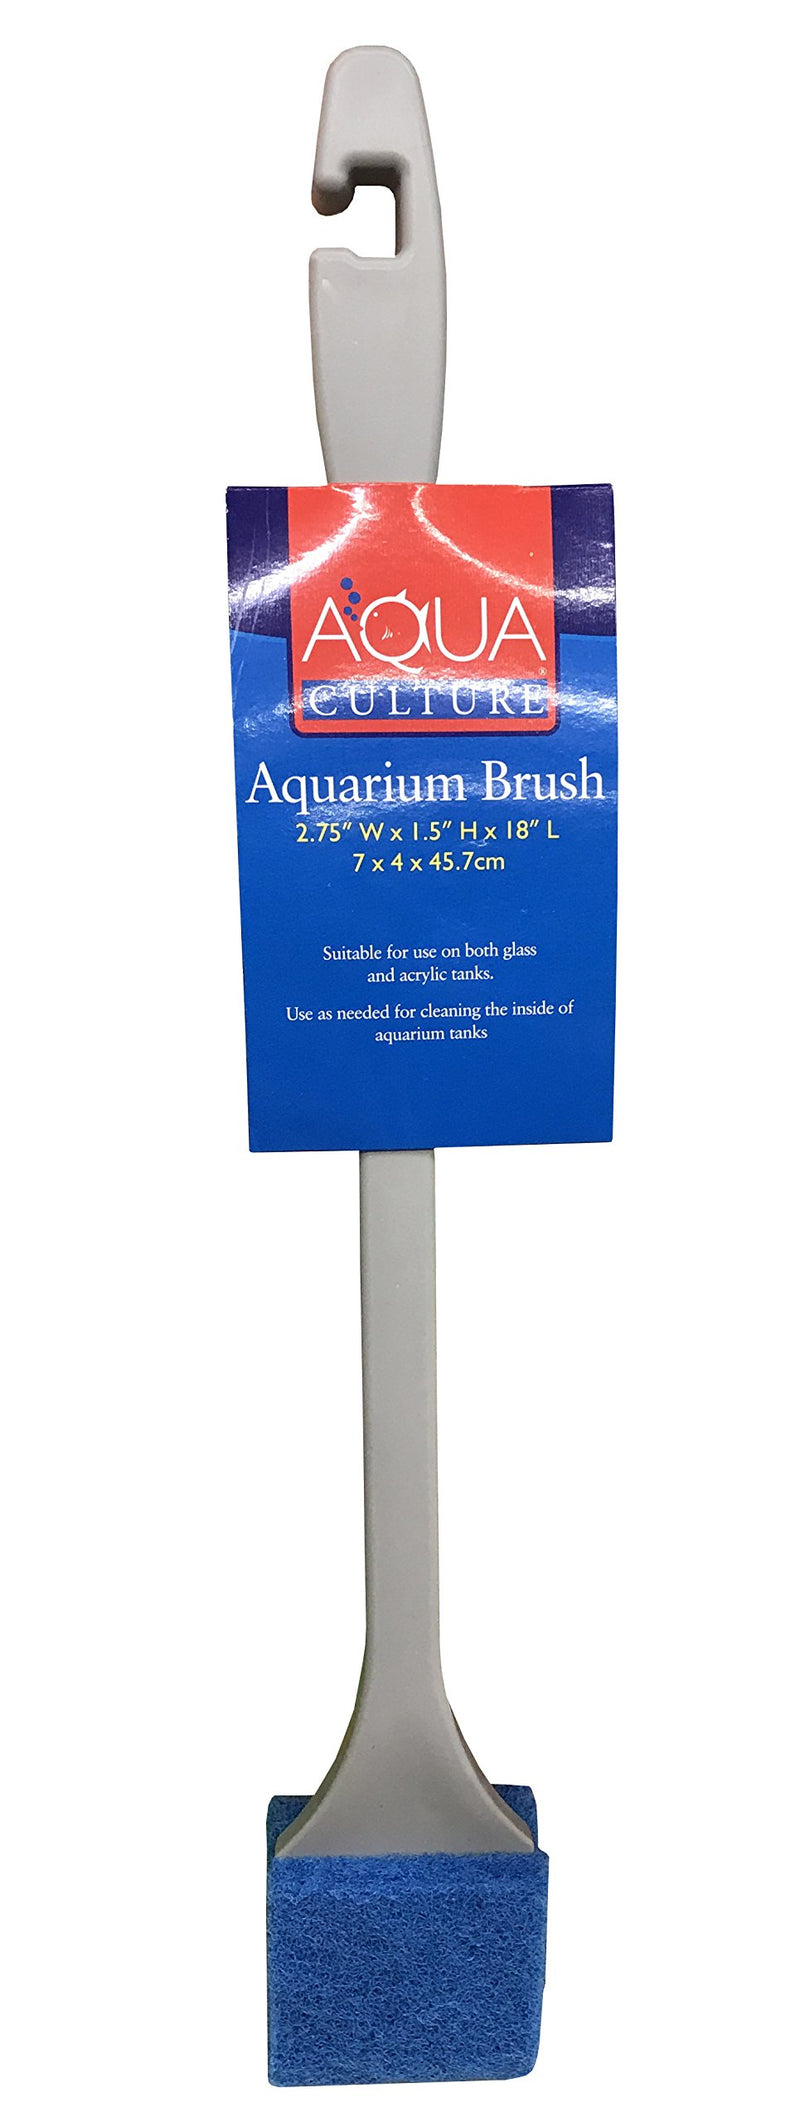 [Australia] - Aqua Culture Aquarium Brush 